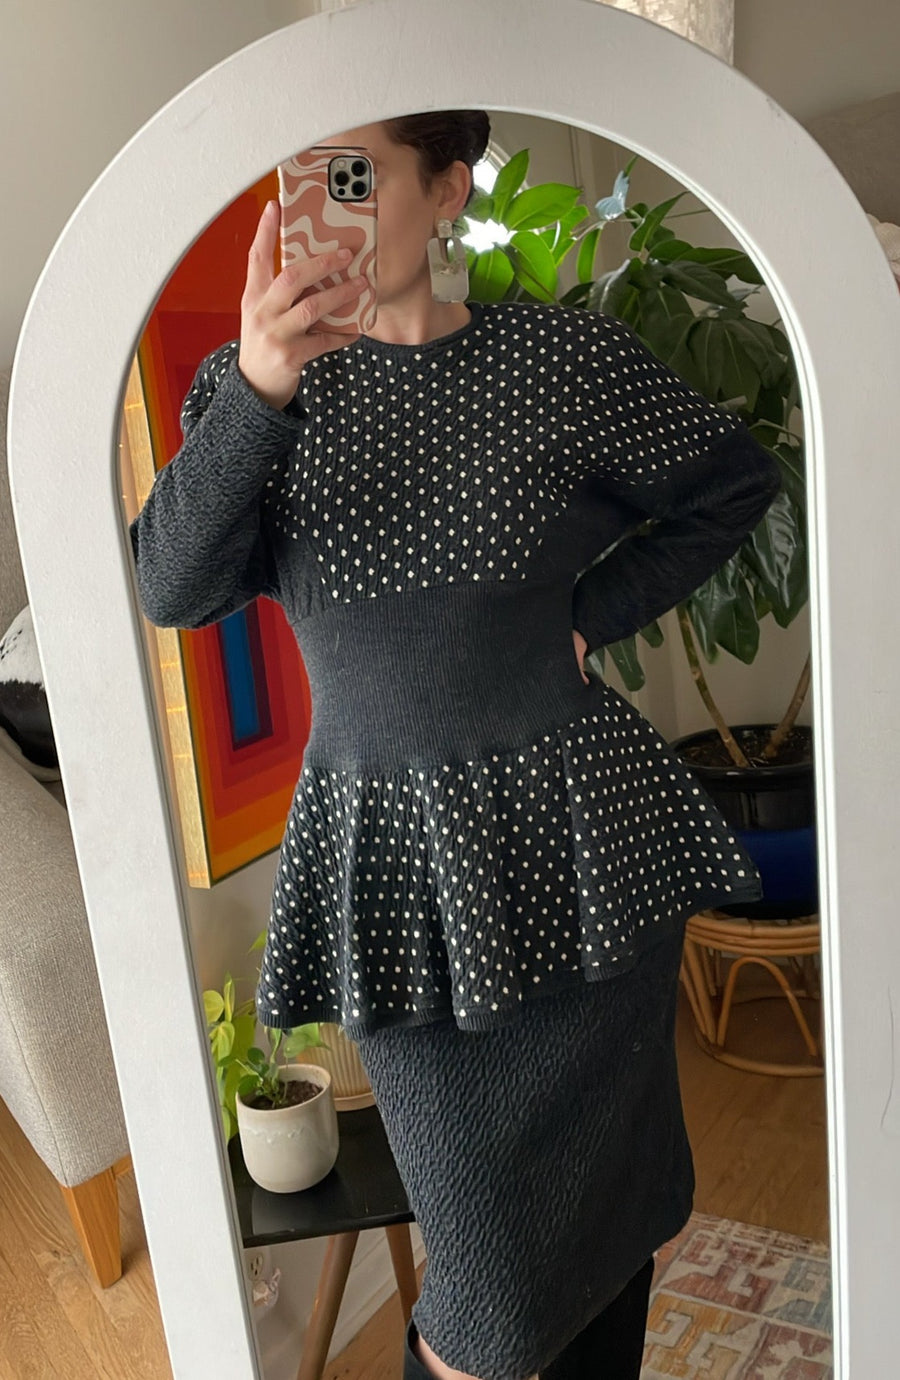 80's Gray Polkadot Peplum Dress - Size M